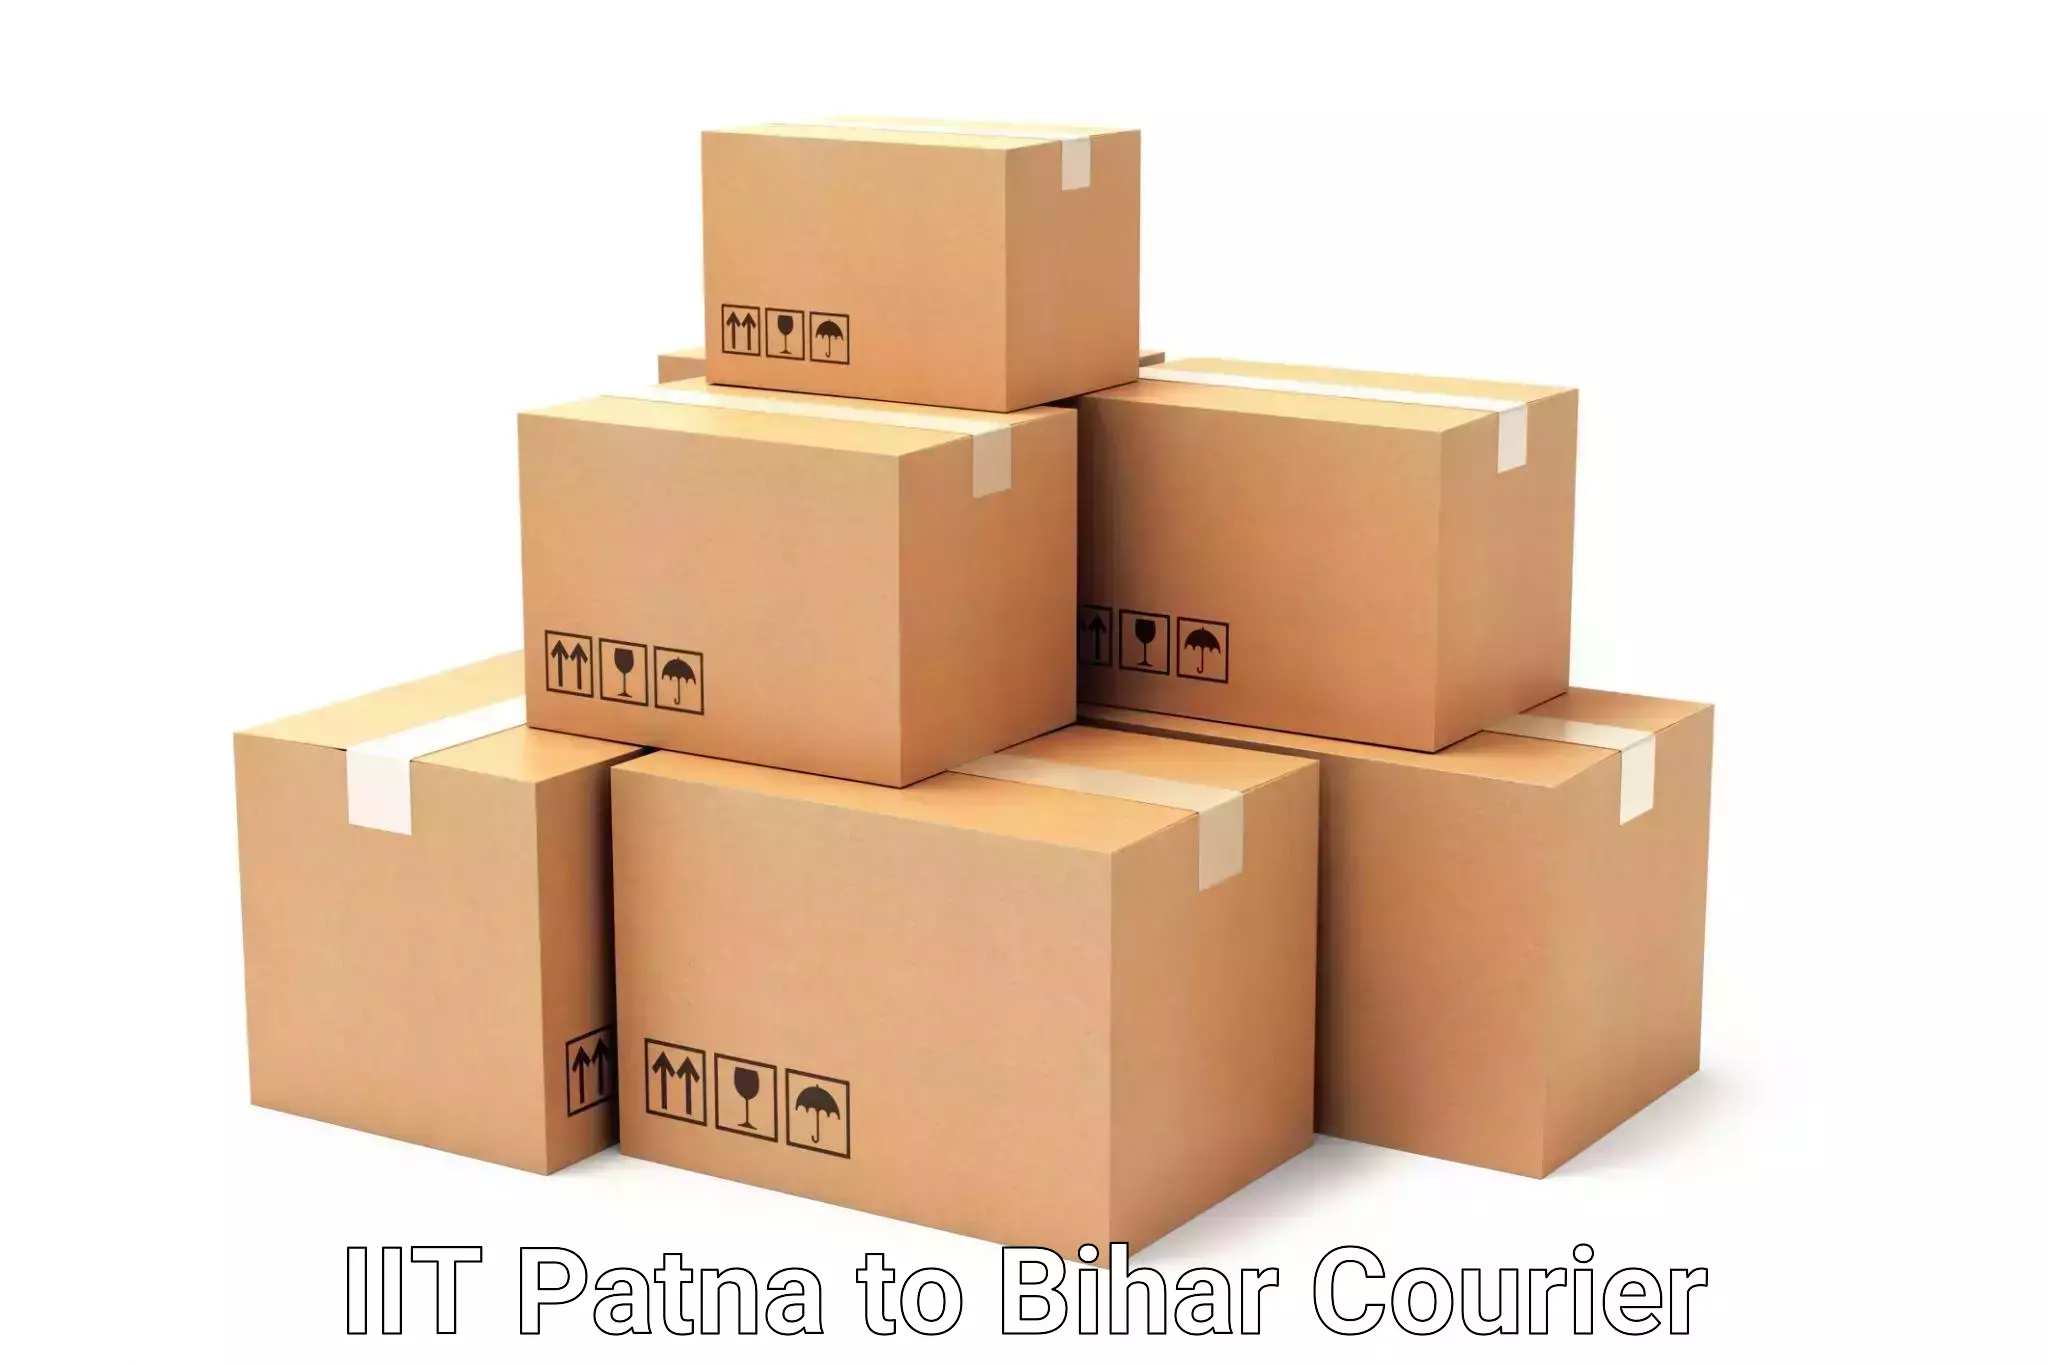 Urgent luggage shipment IIT Patna to Sitamarhi